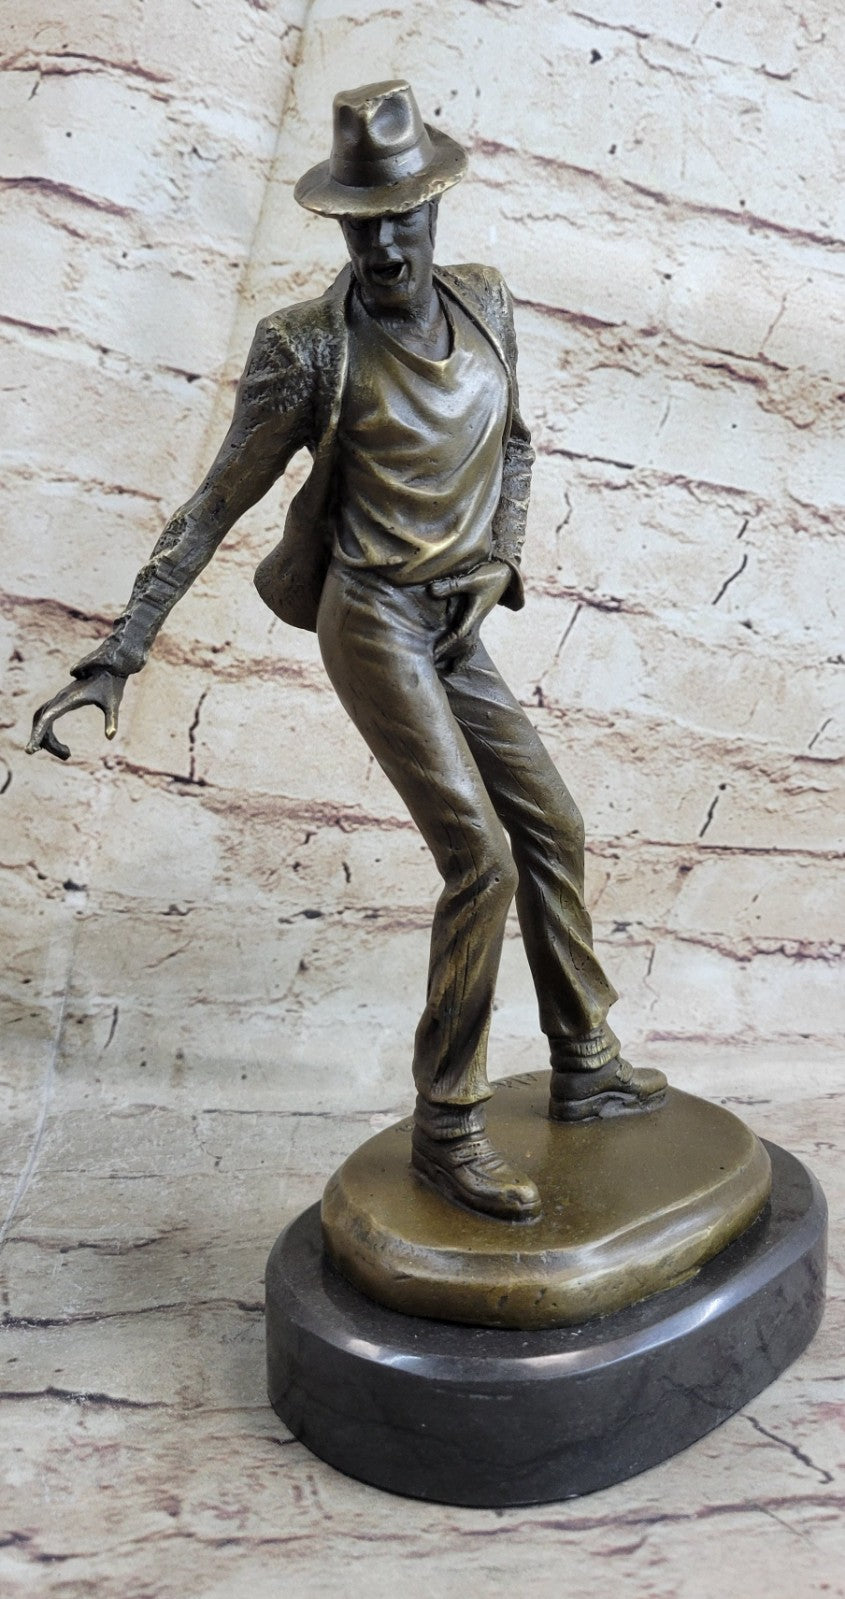 12" Pure Bronze Original Michael Jackson Statue Marble Base Sculpture Art